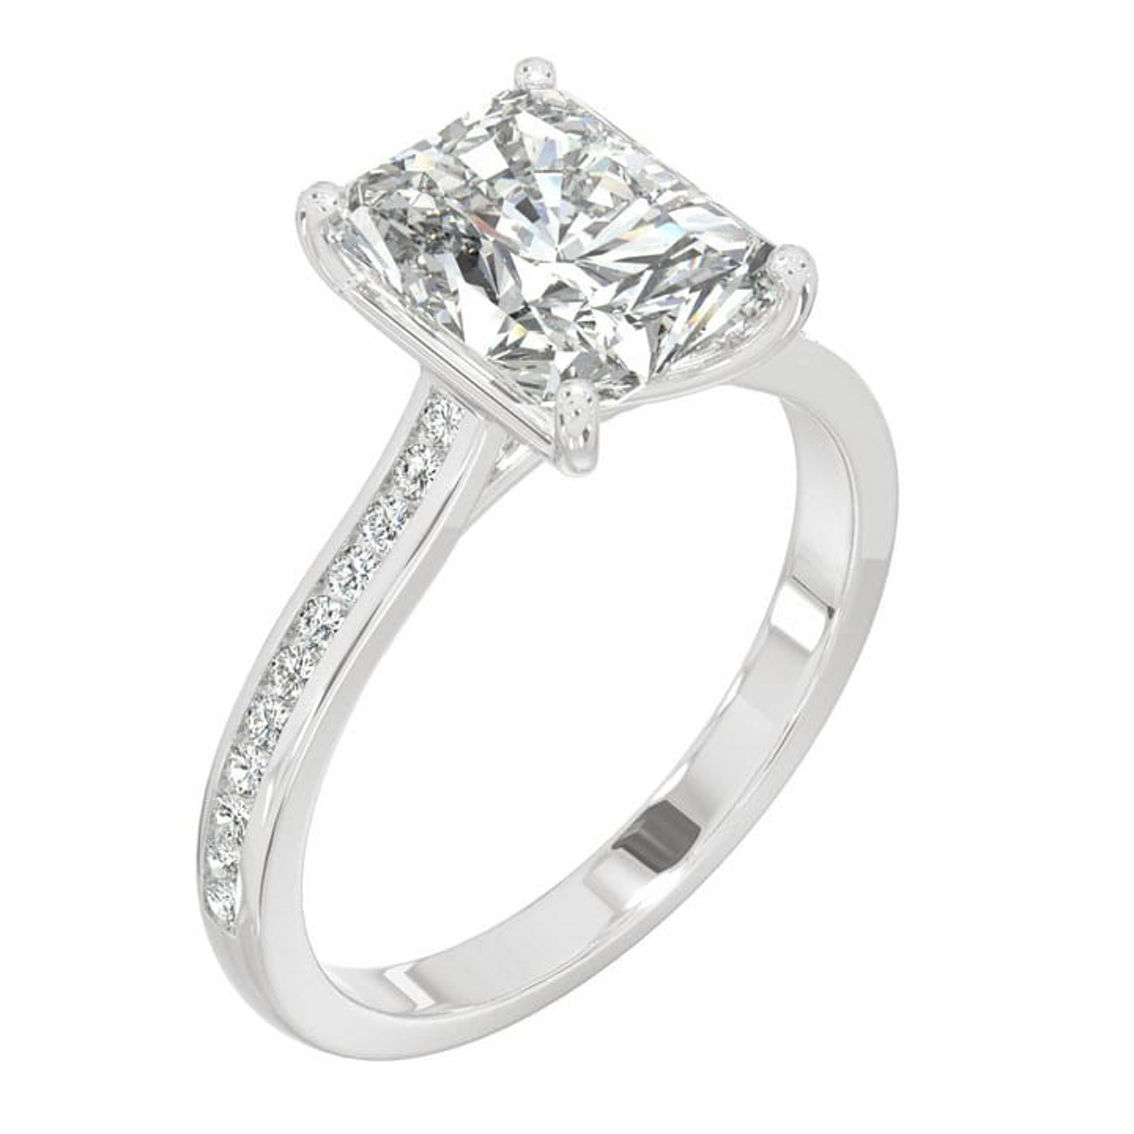 Charles & Colvard 2.88cttw Moissanite Radiant Engagement Ring in 14k White Gold - Image 2 of 5